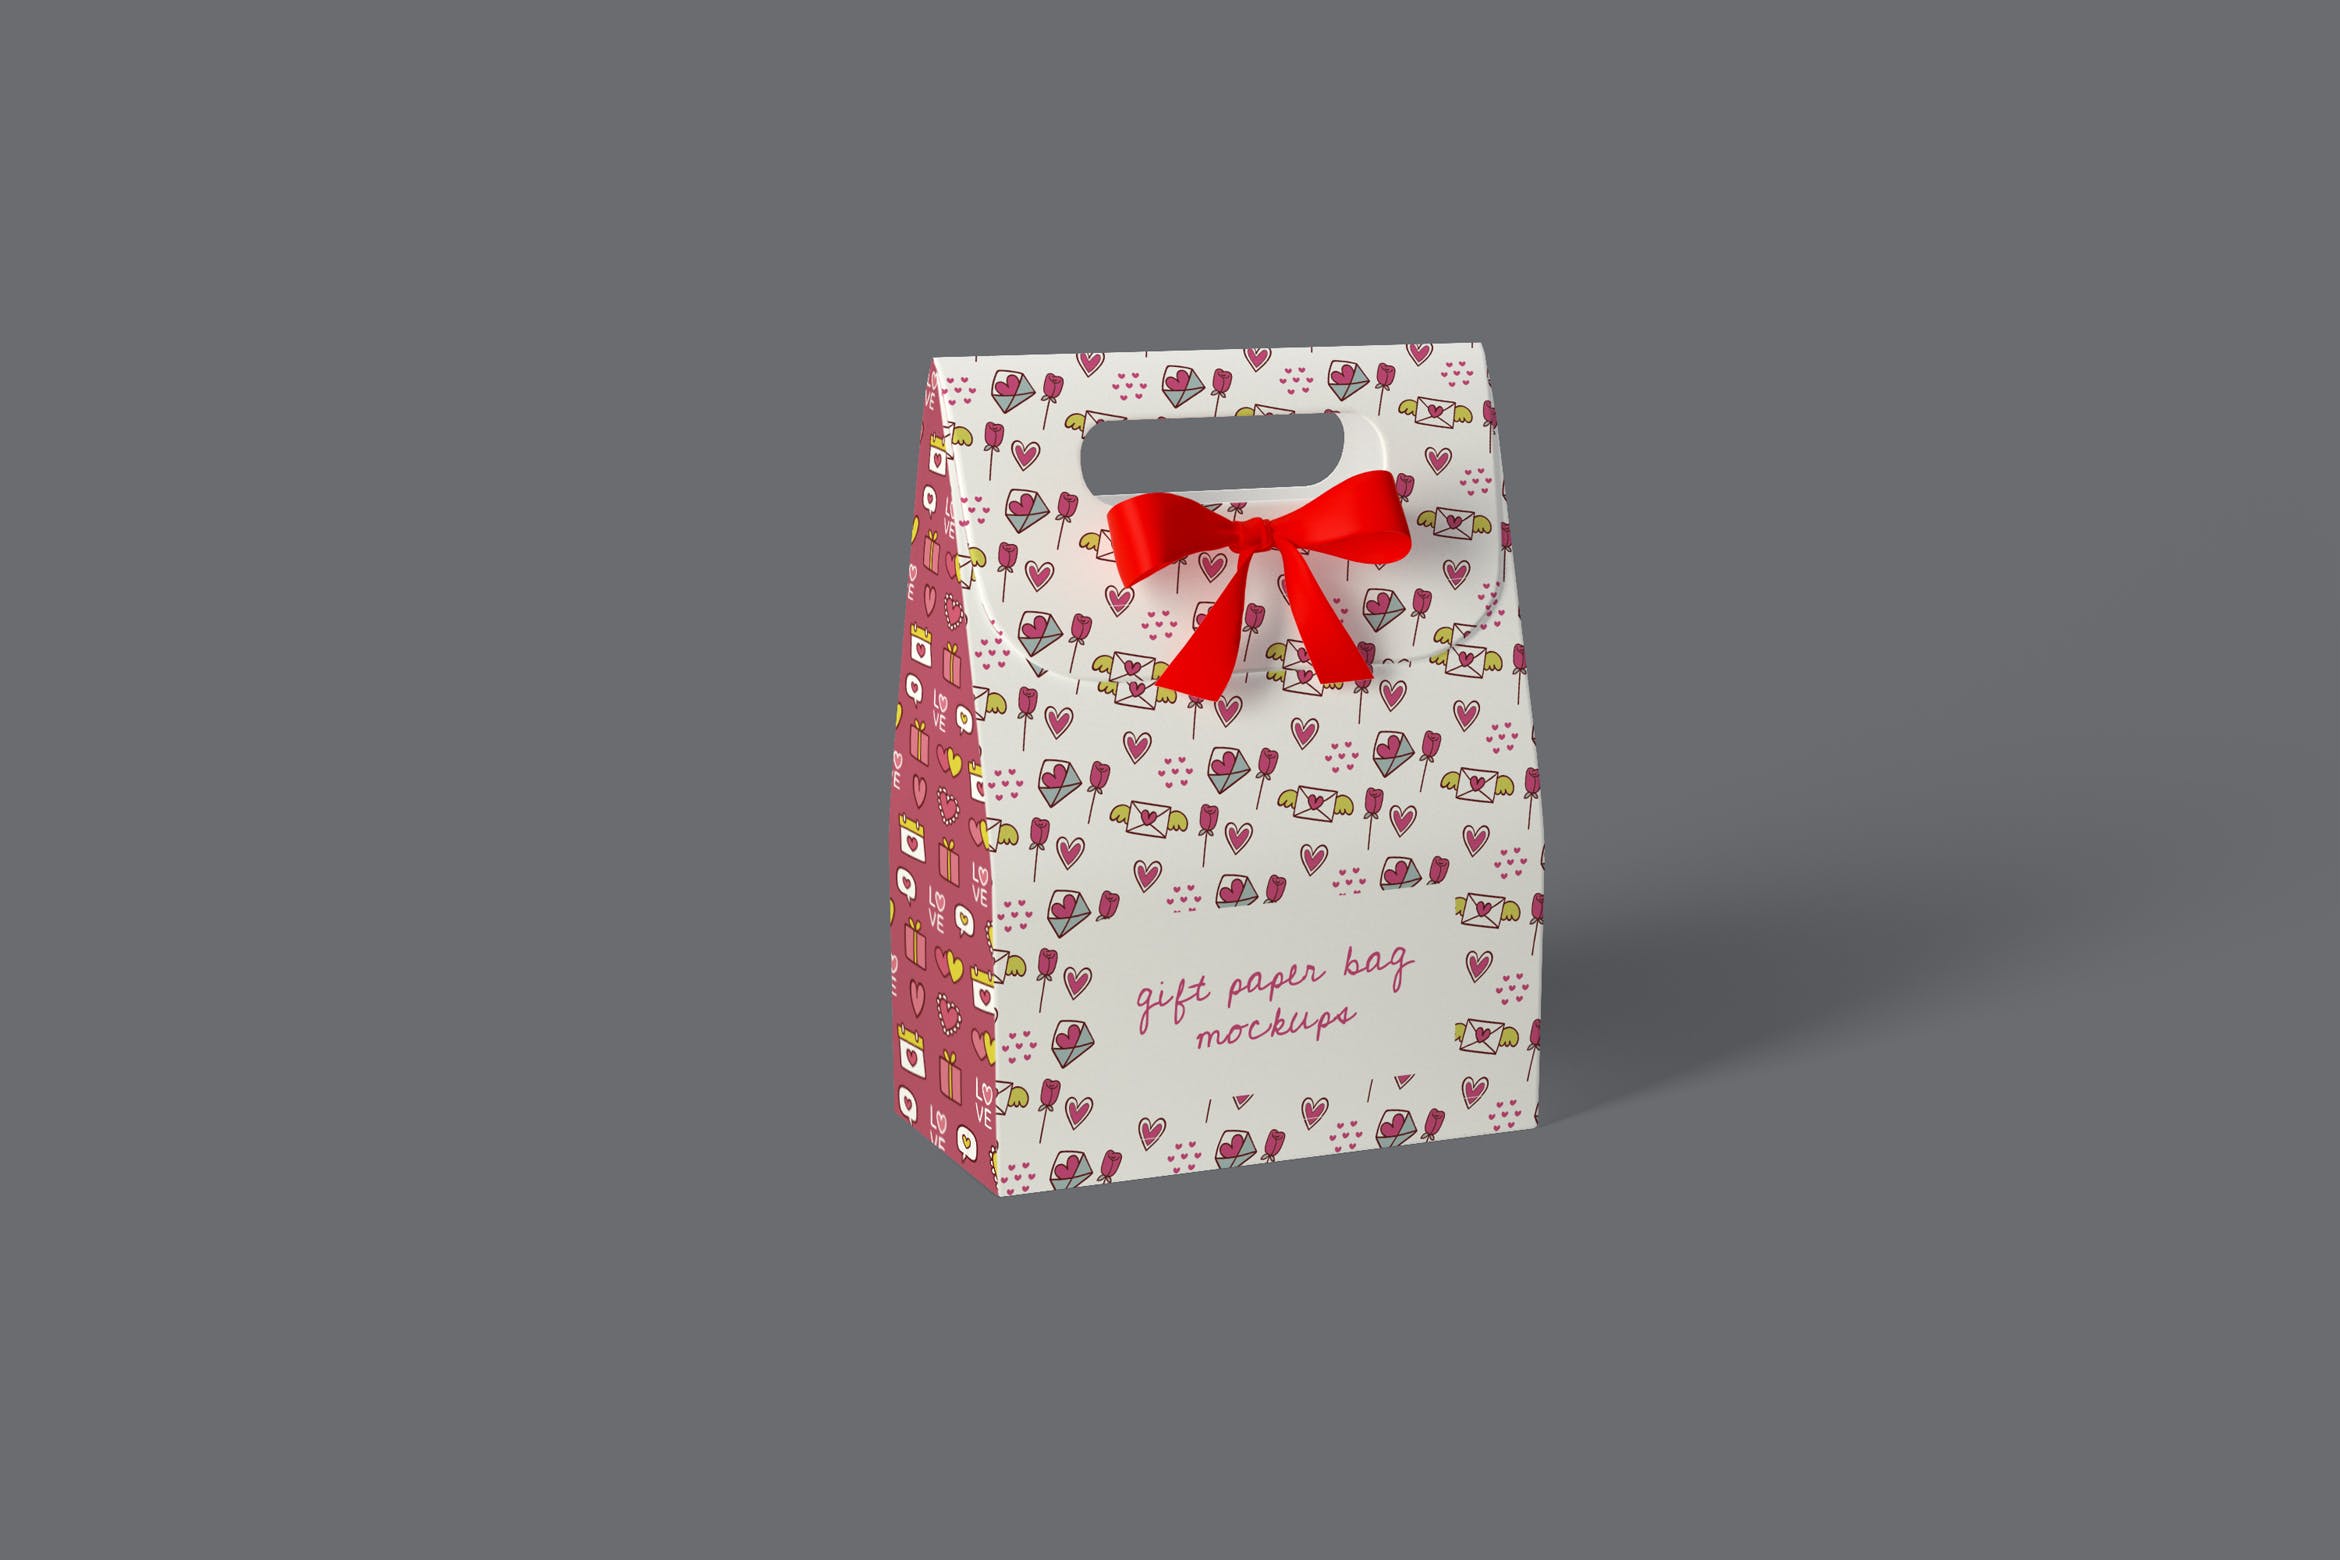 礼品纸袋外观设计图第一素材精选模板 Gift Paper Bag Mockups插图